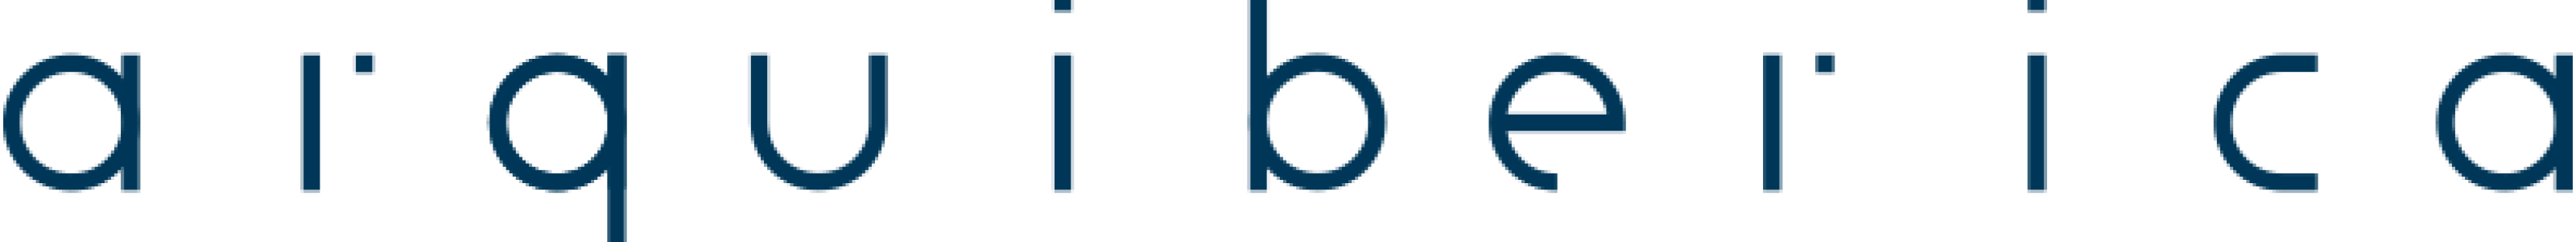 Logo_Azul